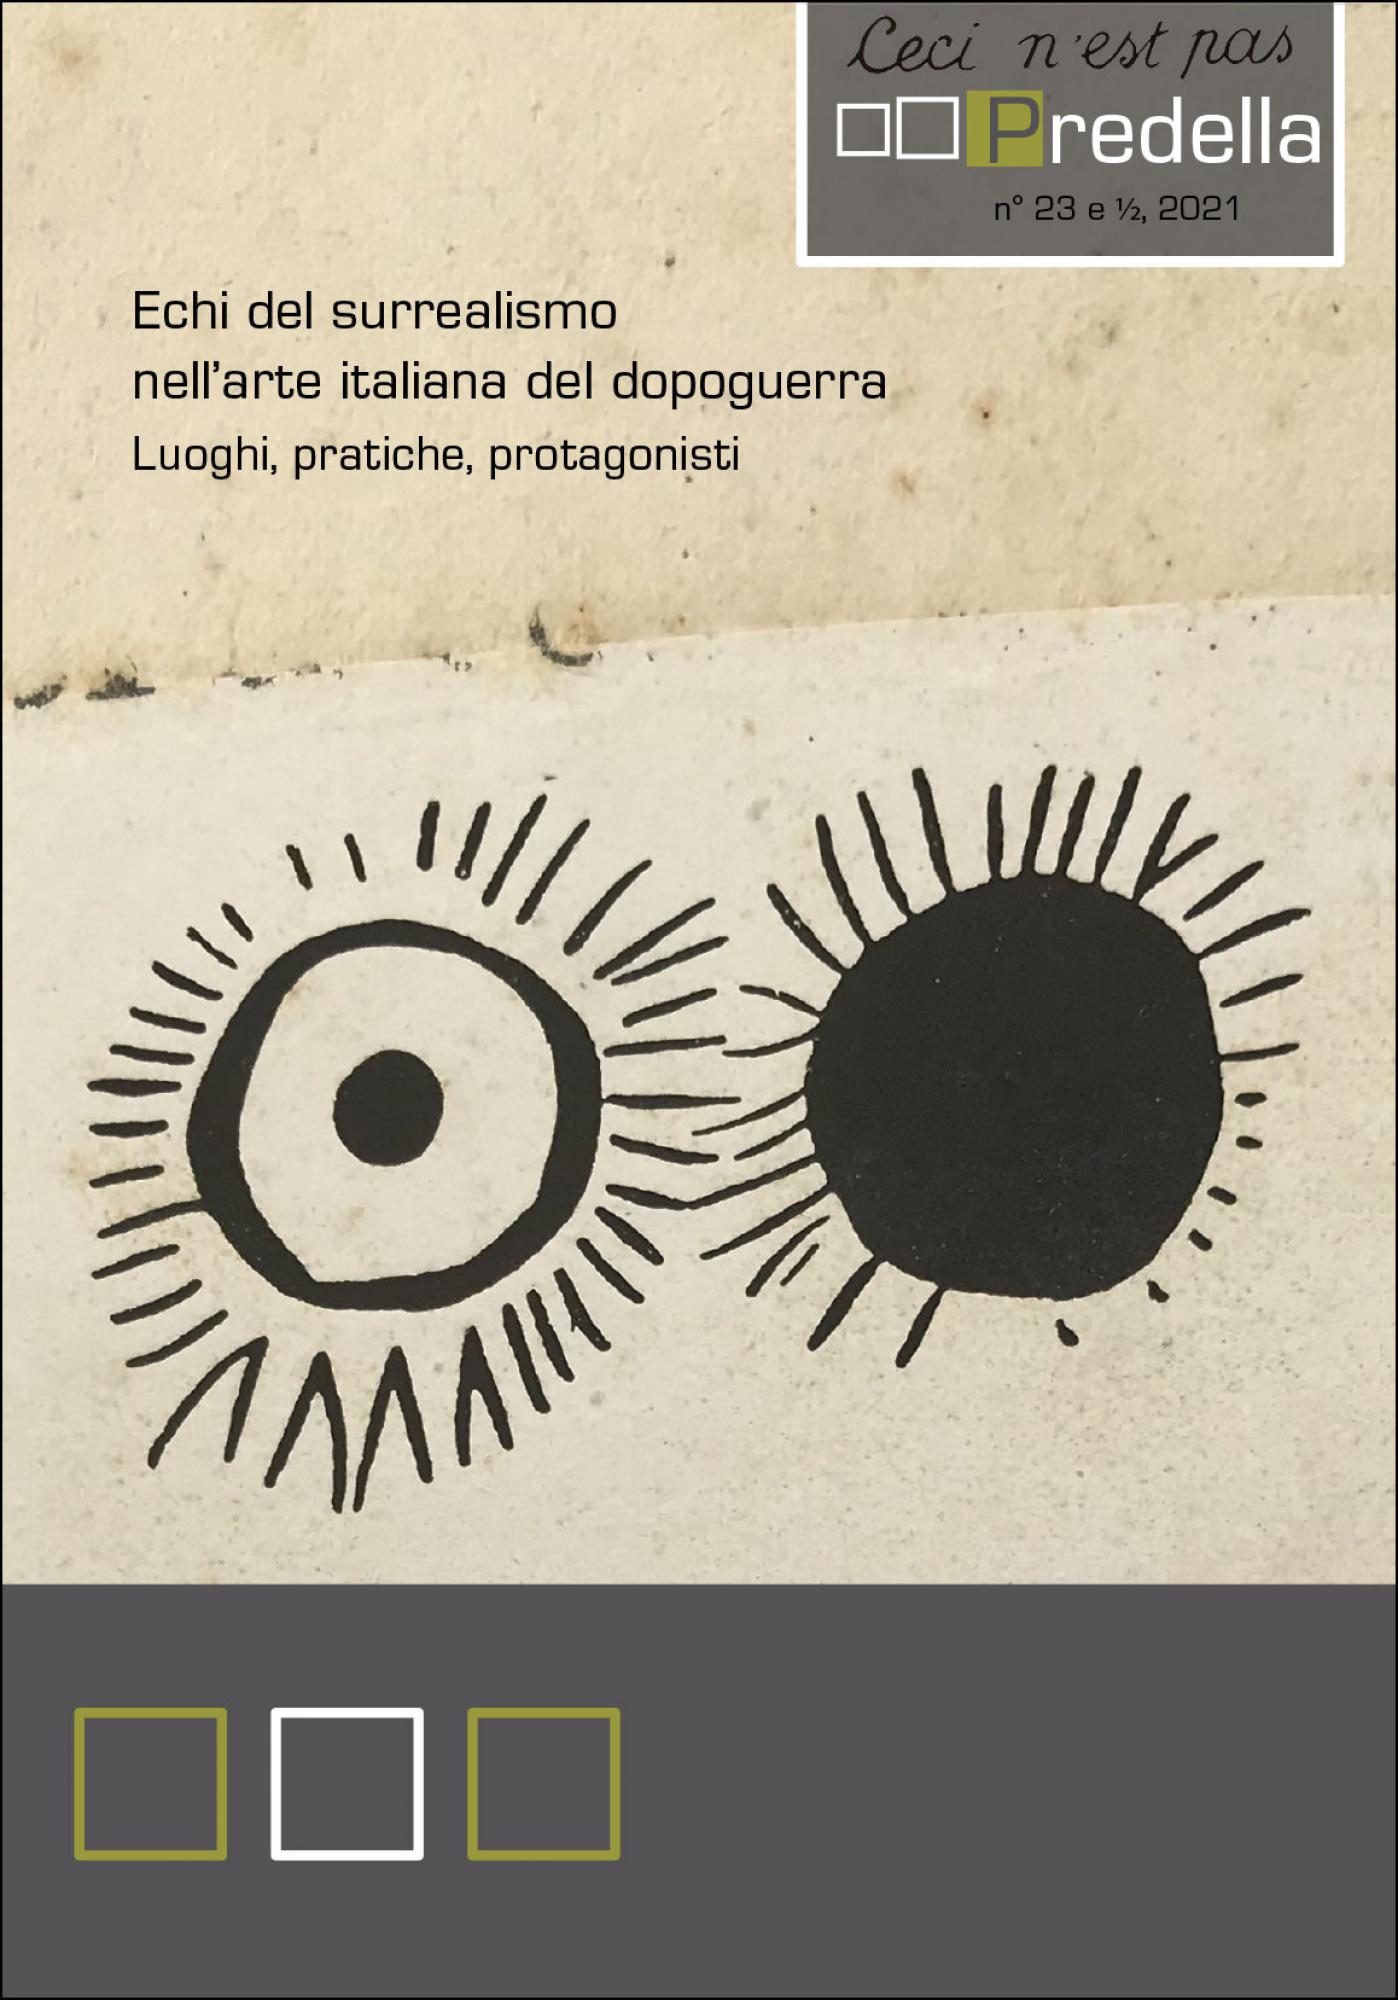 Predella monografia n. 23 e 1/2 2021.Echi del surrealismo nell'arte italiana del dopoguerra. Luoghi, pratiche, protagonisti